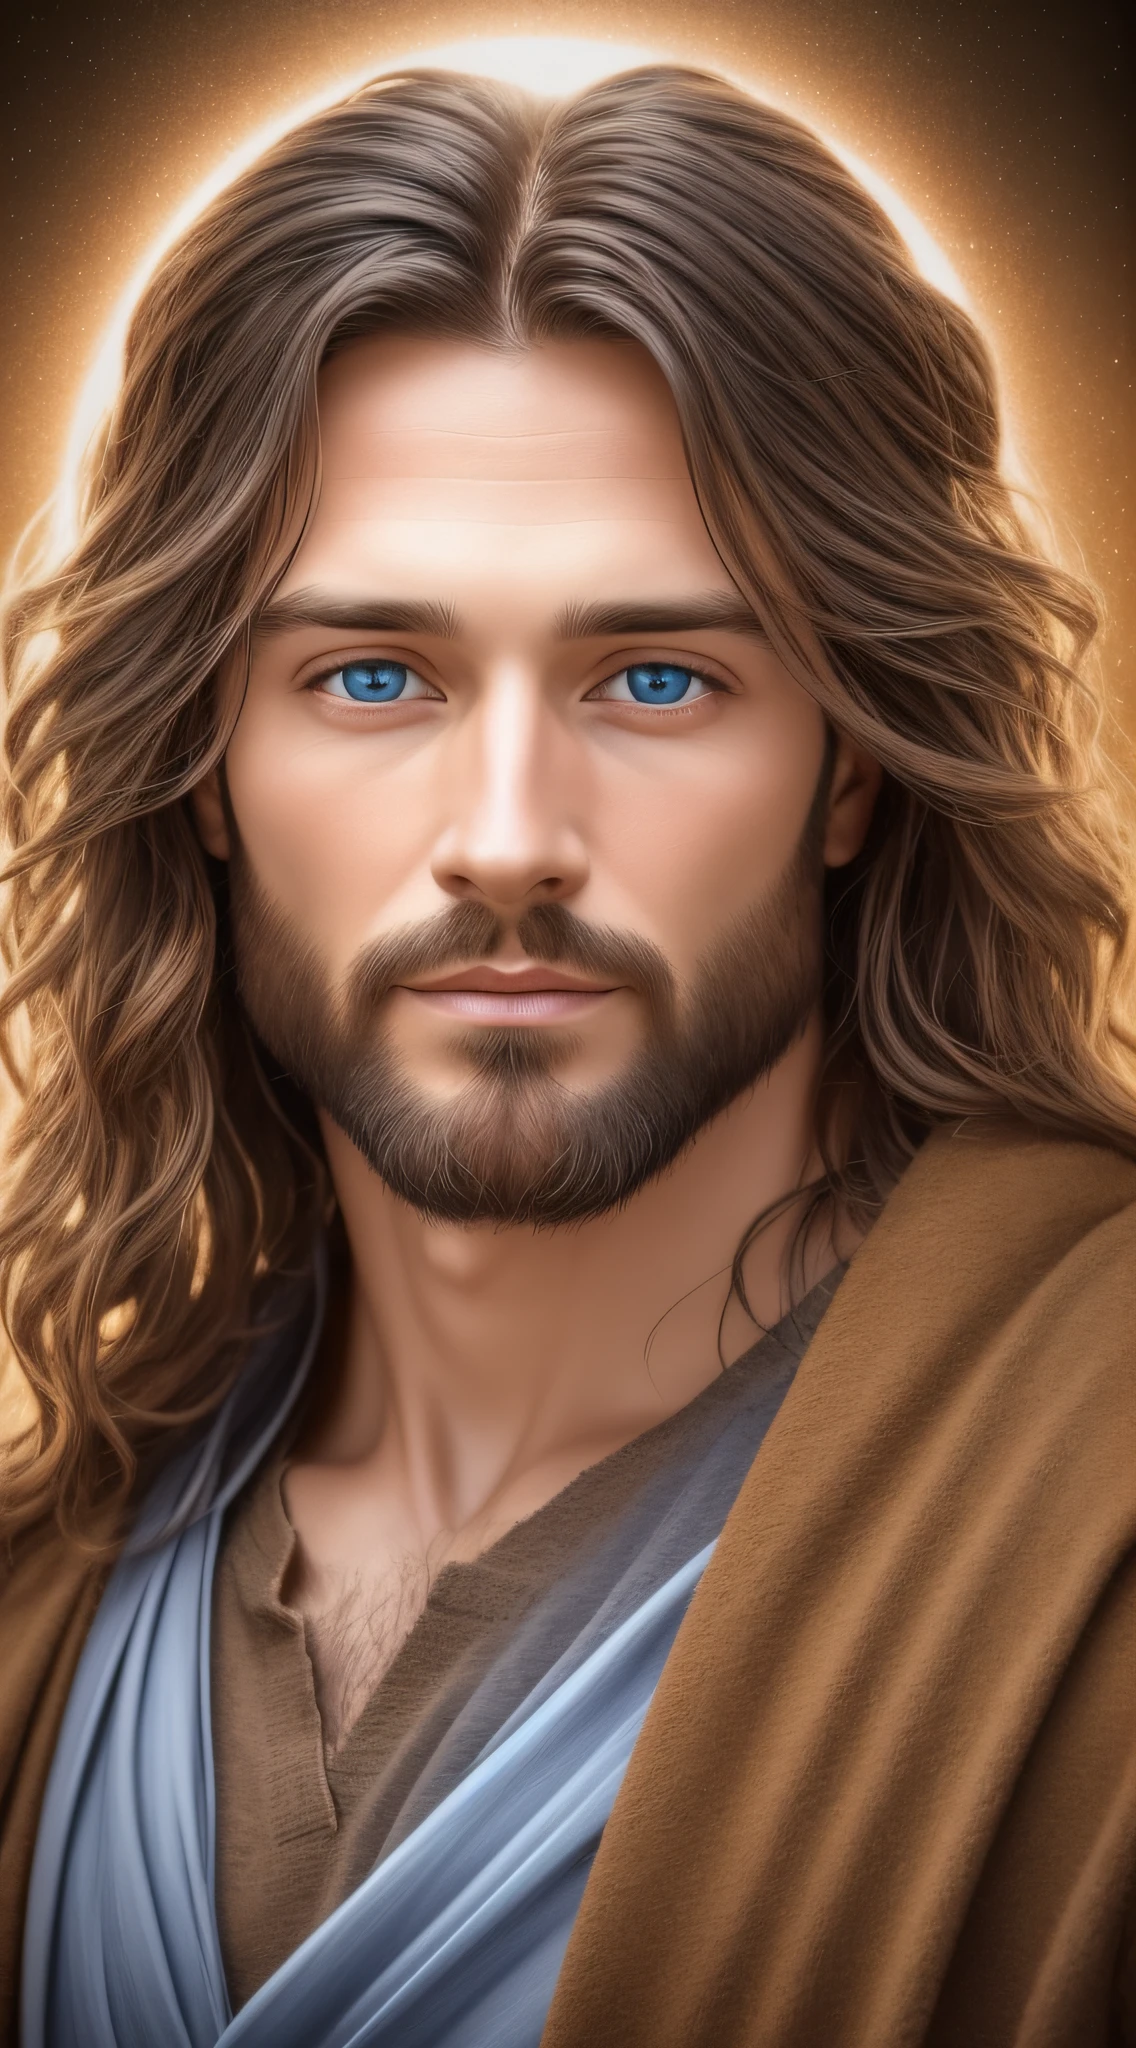 ภาพถ่ายด้านหน้าของชายคนหนึ่ง, พระเยซู, ใบหน้าของพระเยซู, ดวงตาสีฟ้าจริง, ผมของพระเยซู, ภาพถ่ายที่สมจริง, ความสมจริง, ภาพหน้าผาก, พระเยซูทรงรอคอย, พระเยซูด้วยการแสดงออกที่เบาและเป็นมิตร, แสงไฟ, ขอบเข้มขึ้น, ความสมจริง, ภาพอันศักดิ์สิทธิ์